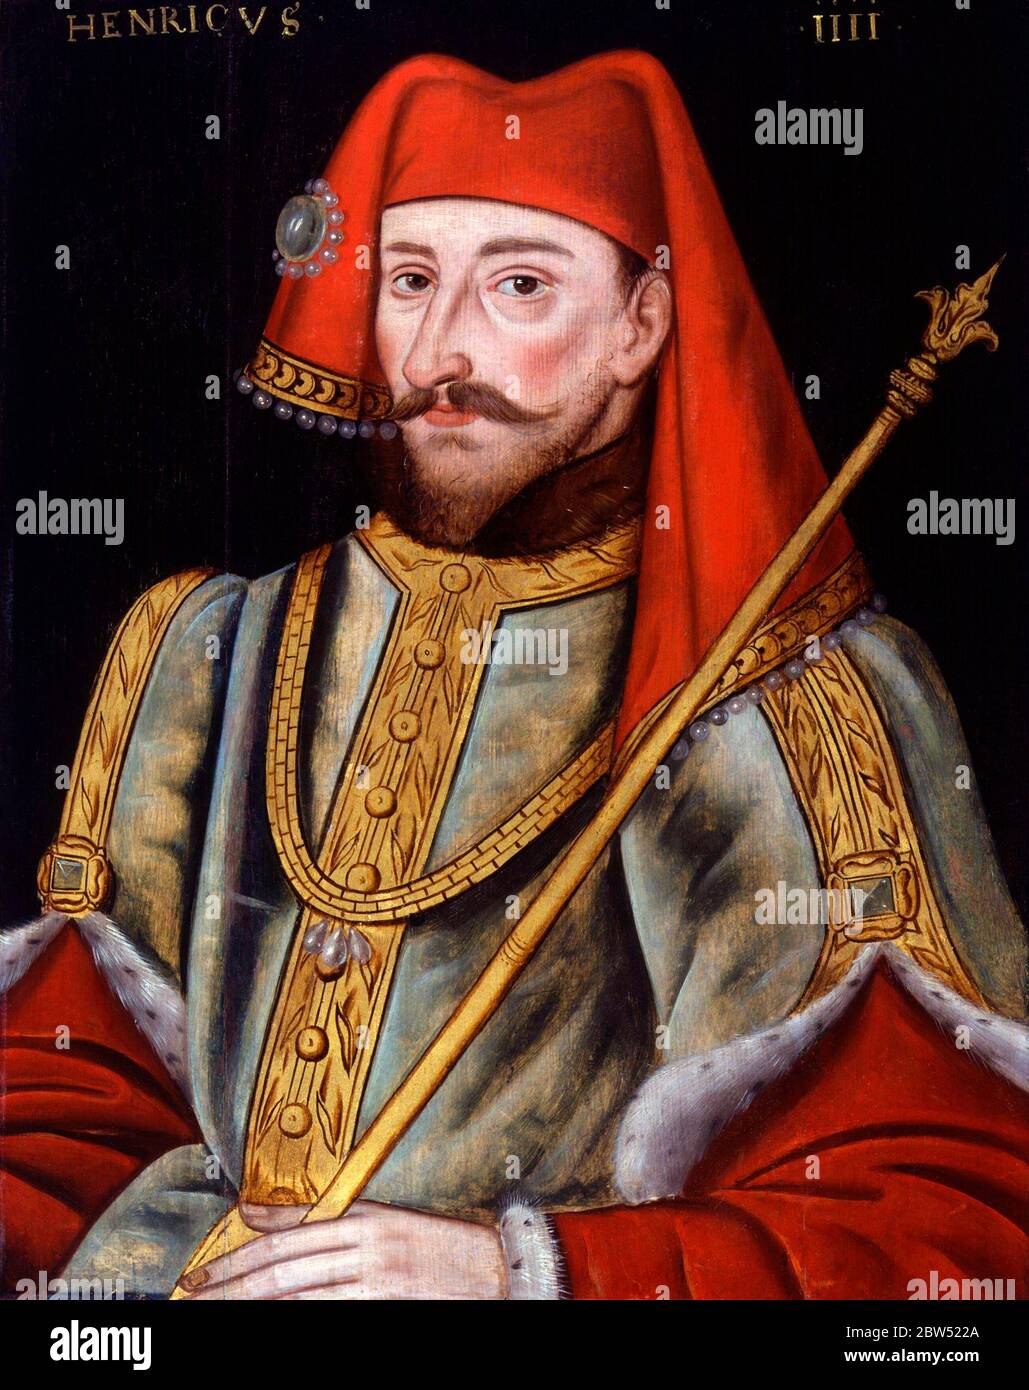 Retrato del rey Enrique IV de Inglaterra (1367-1413), que reinó desde 1399 hasta 1413 Foto de stock